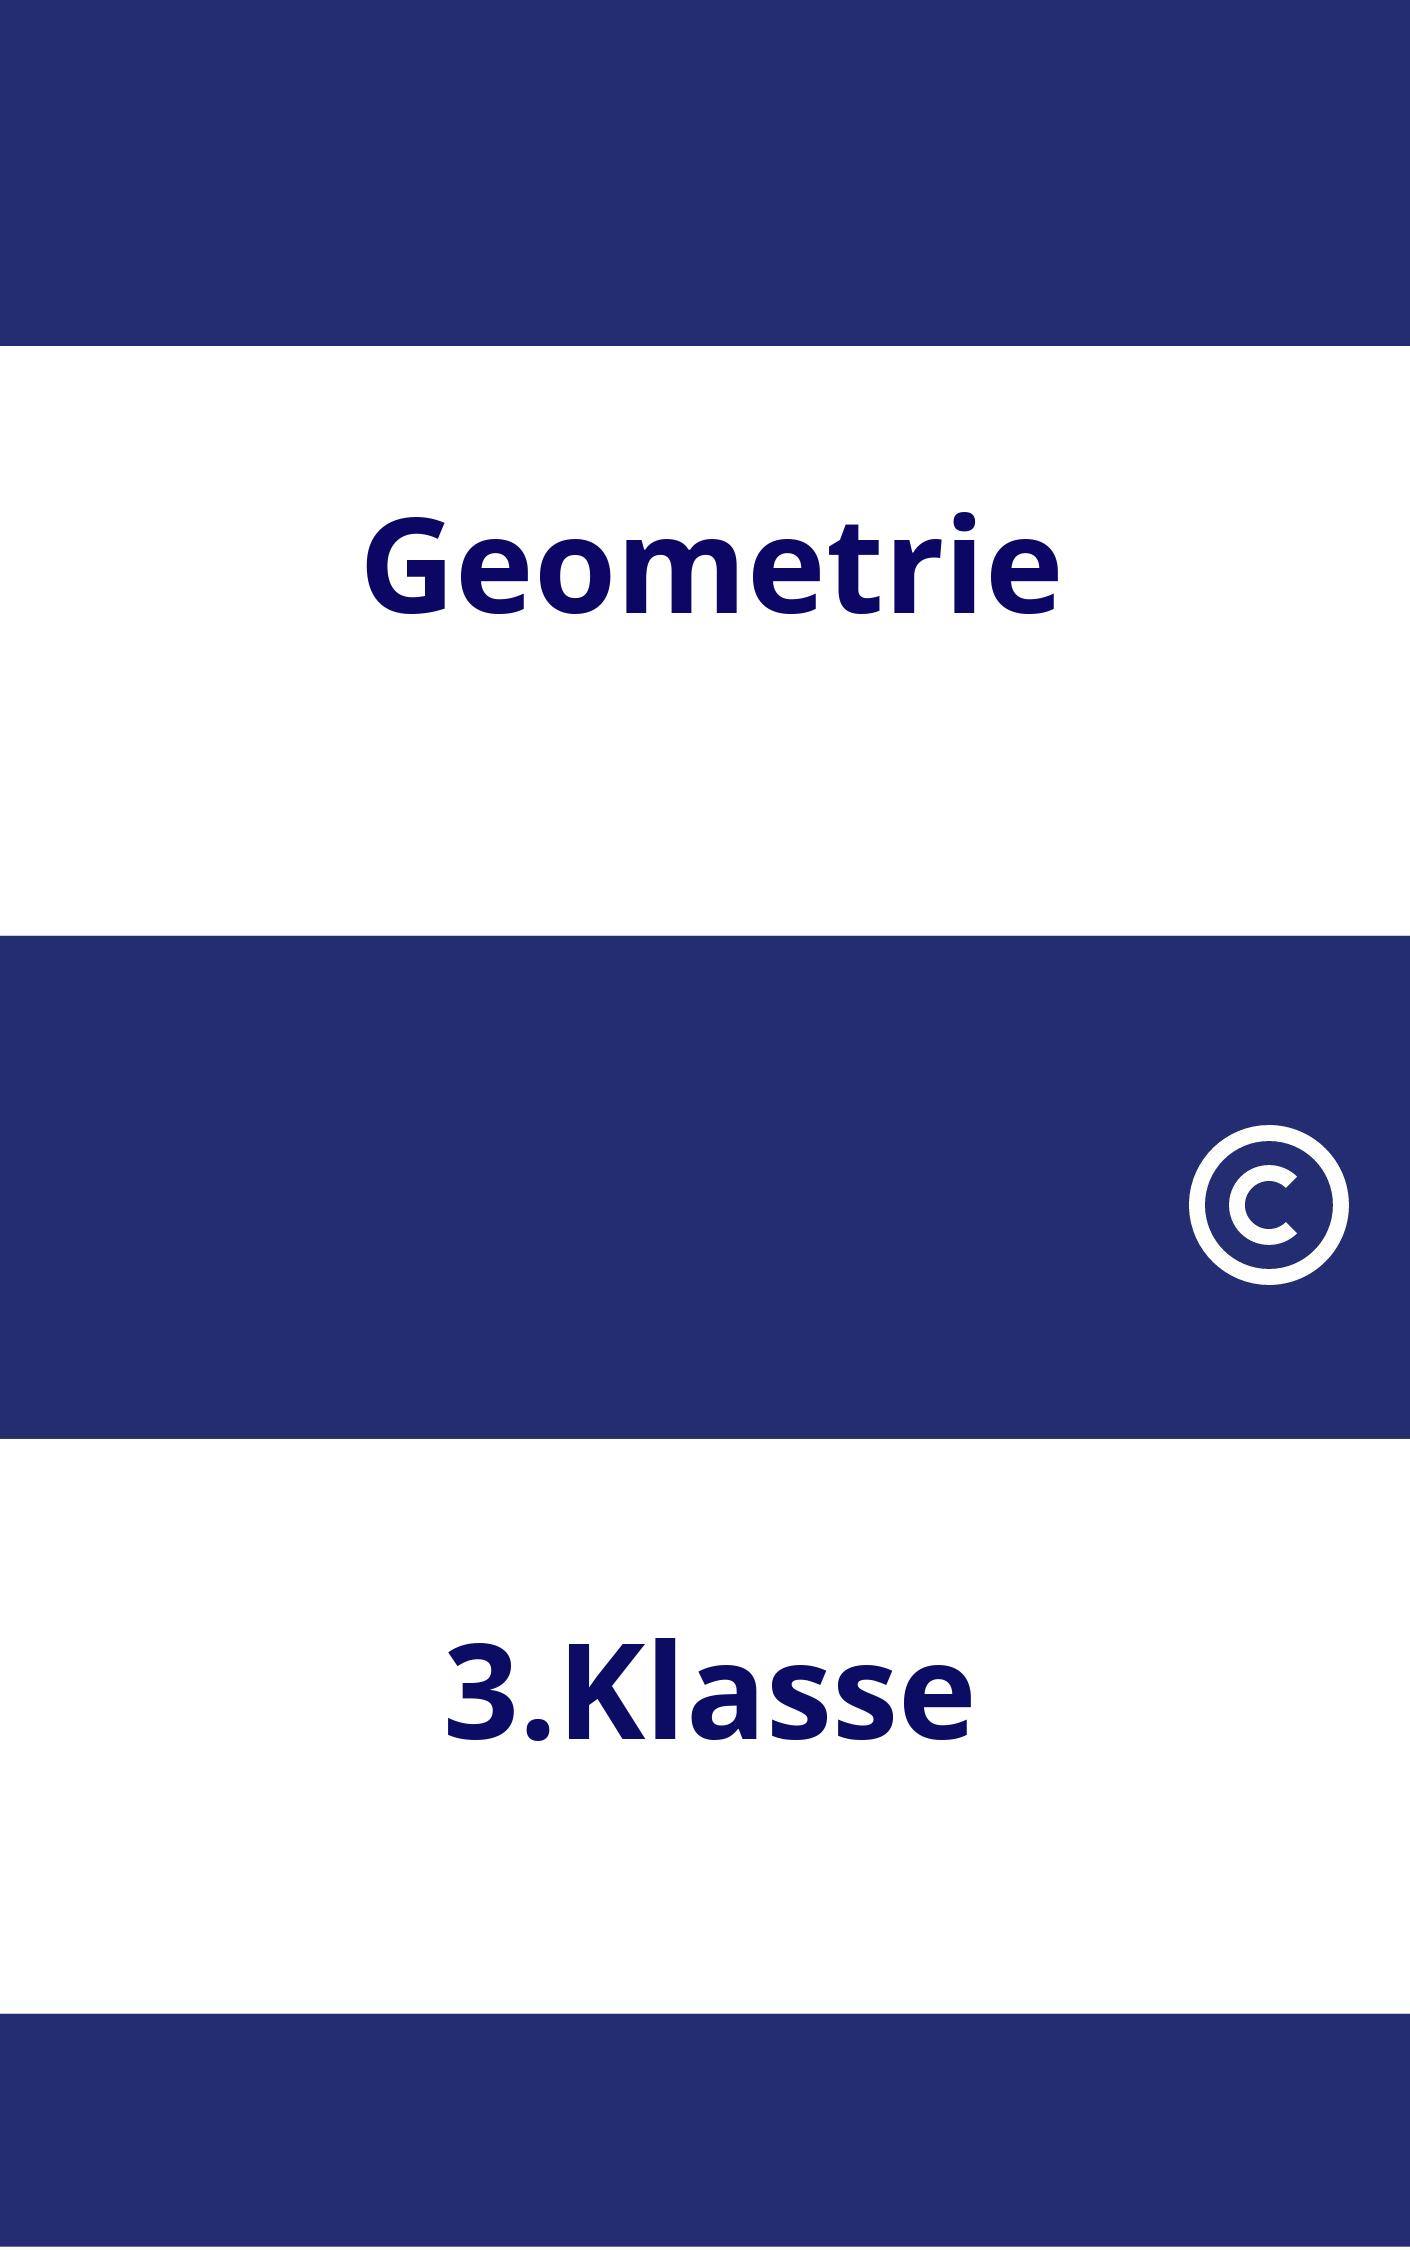 Geometrie 3.Klasse Arbeitsblätter PDF